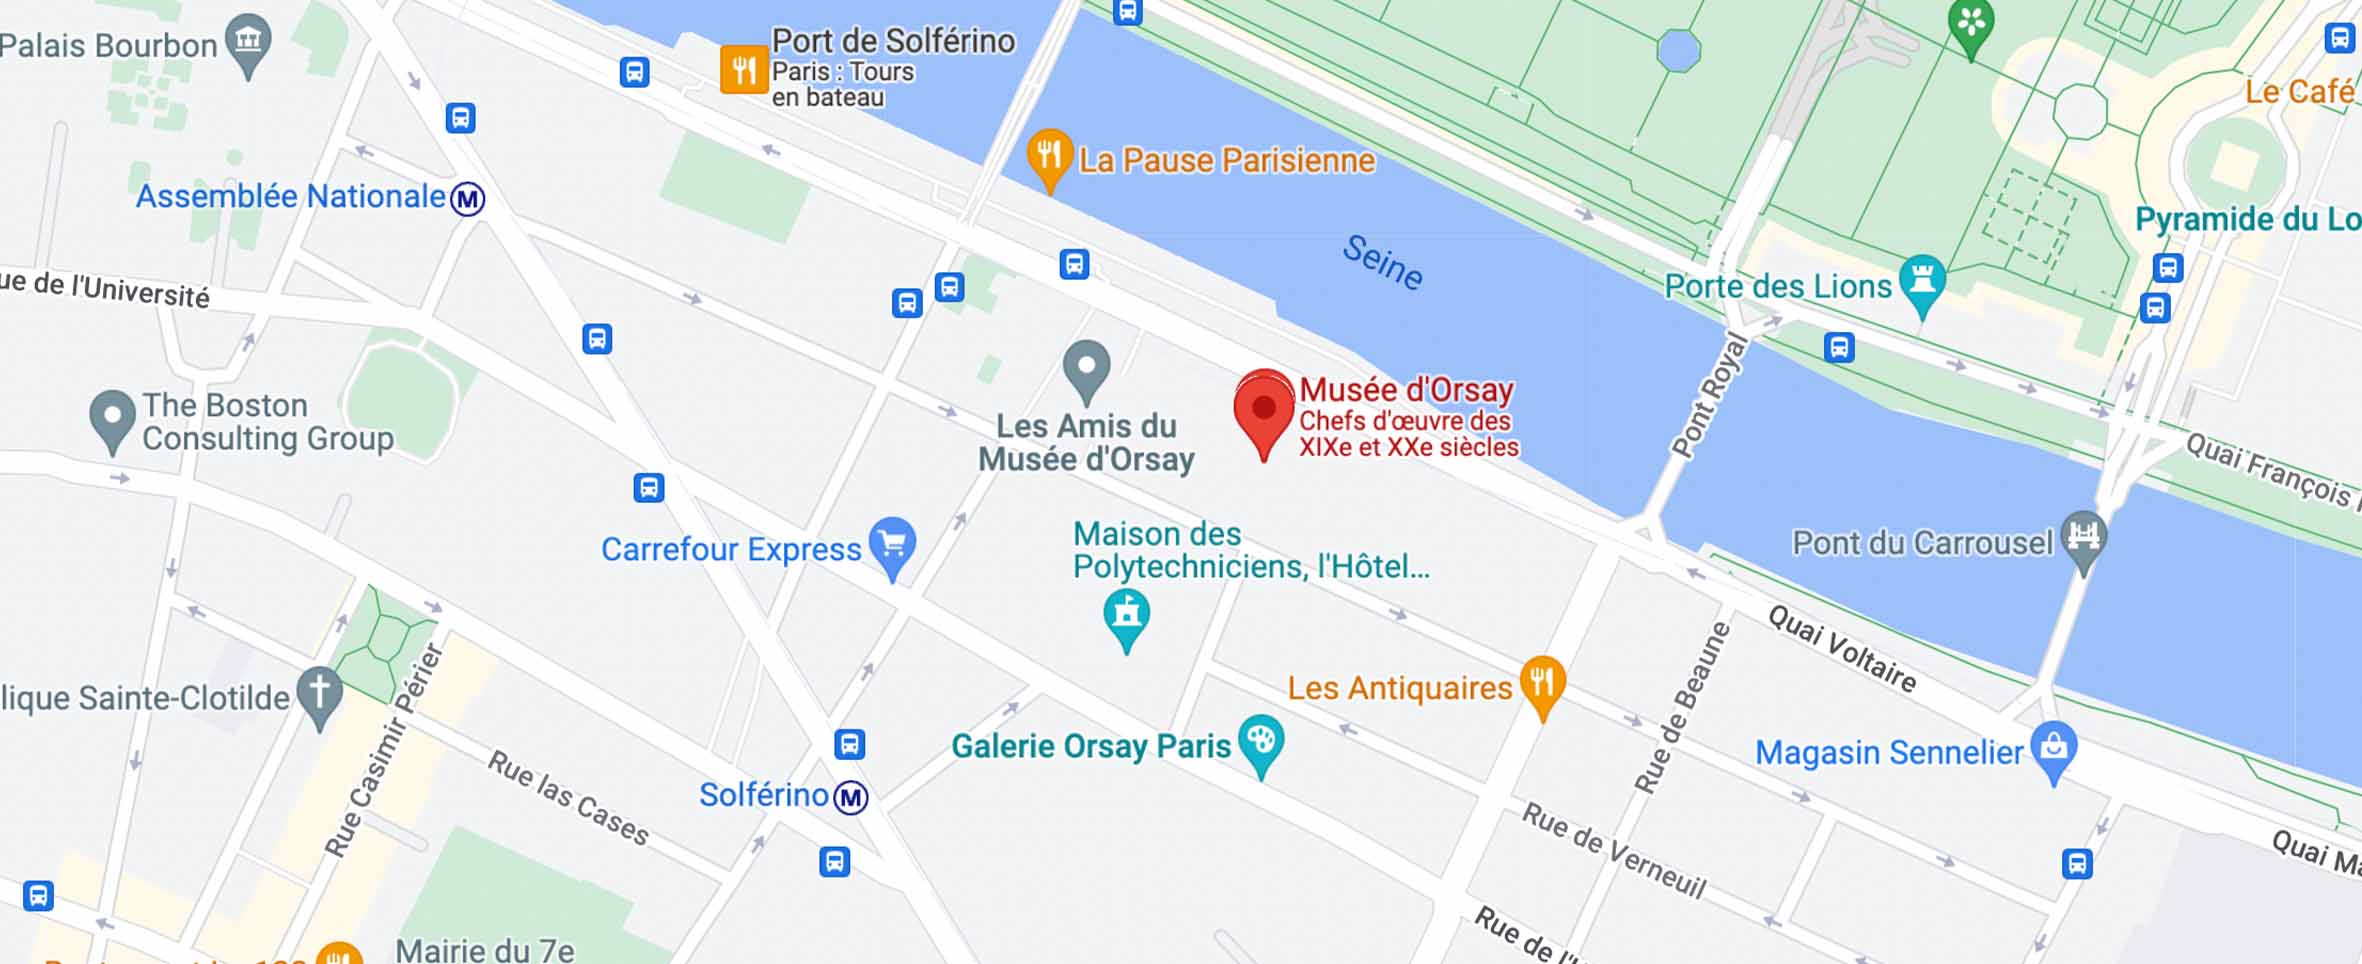 Mapa para llegar al museo d'Orsay